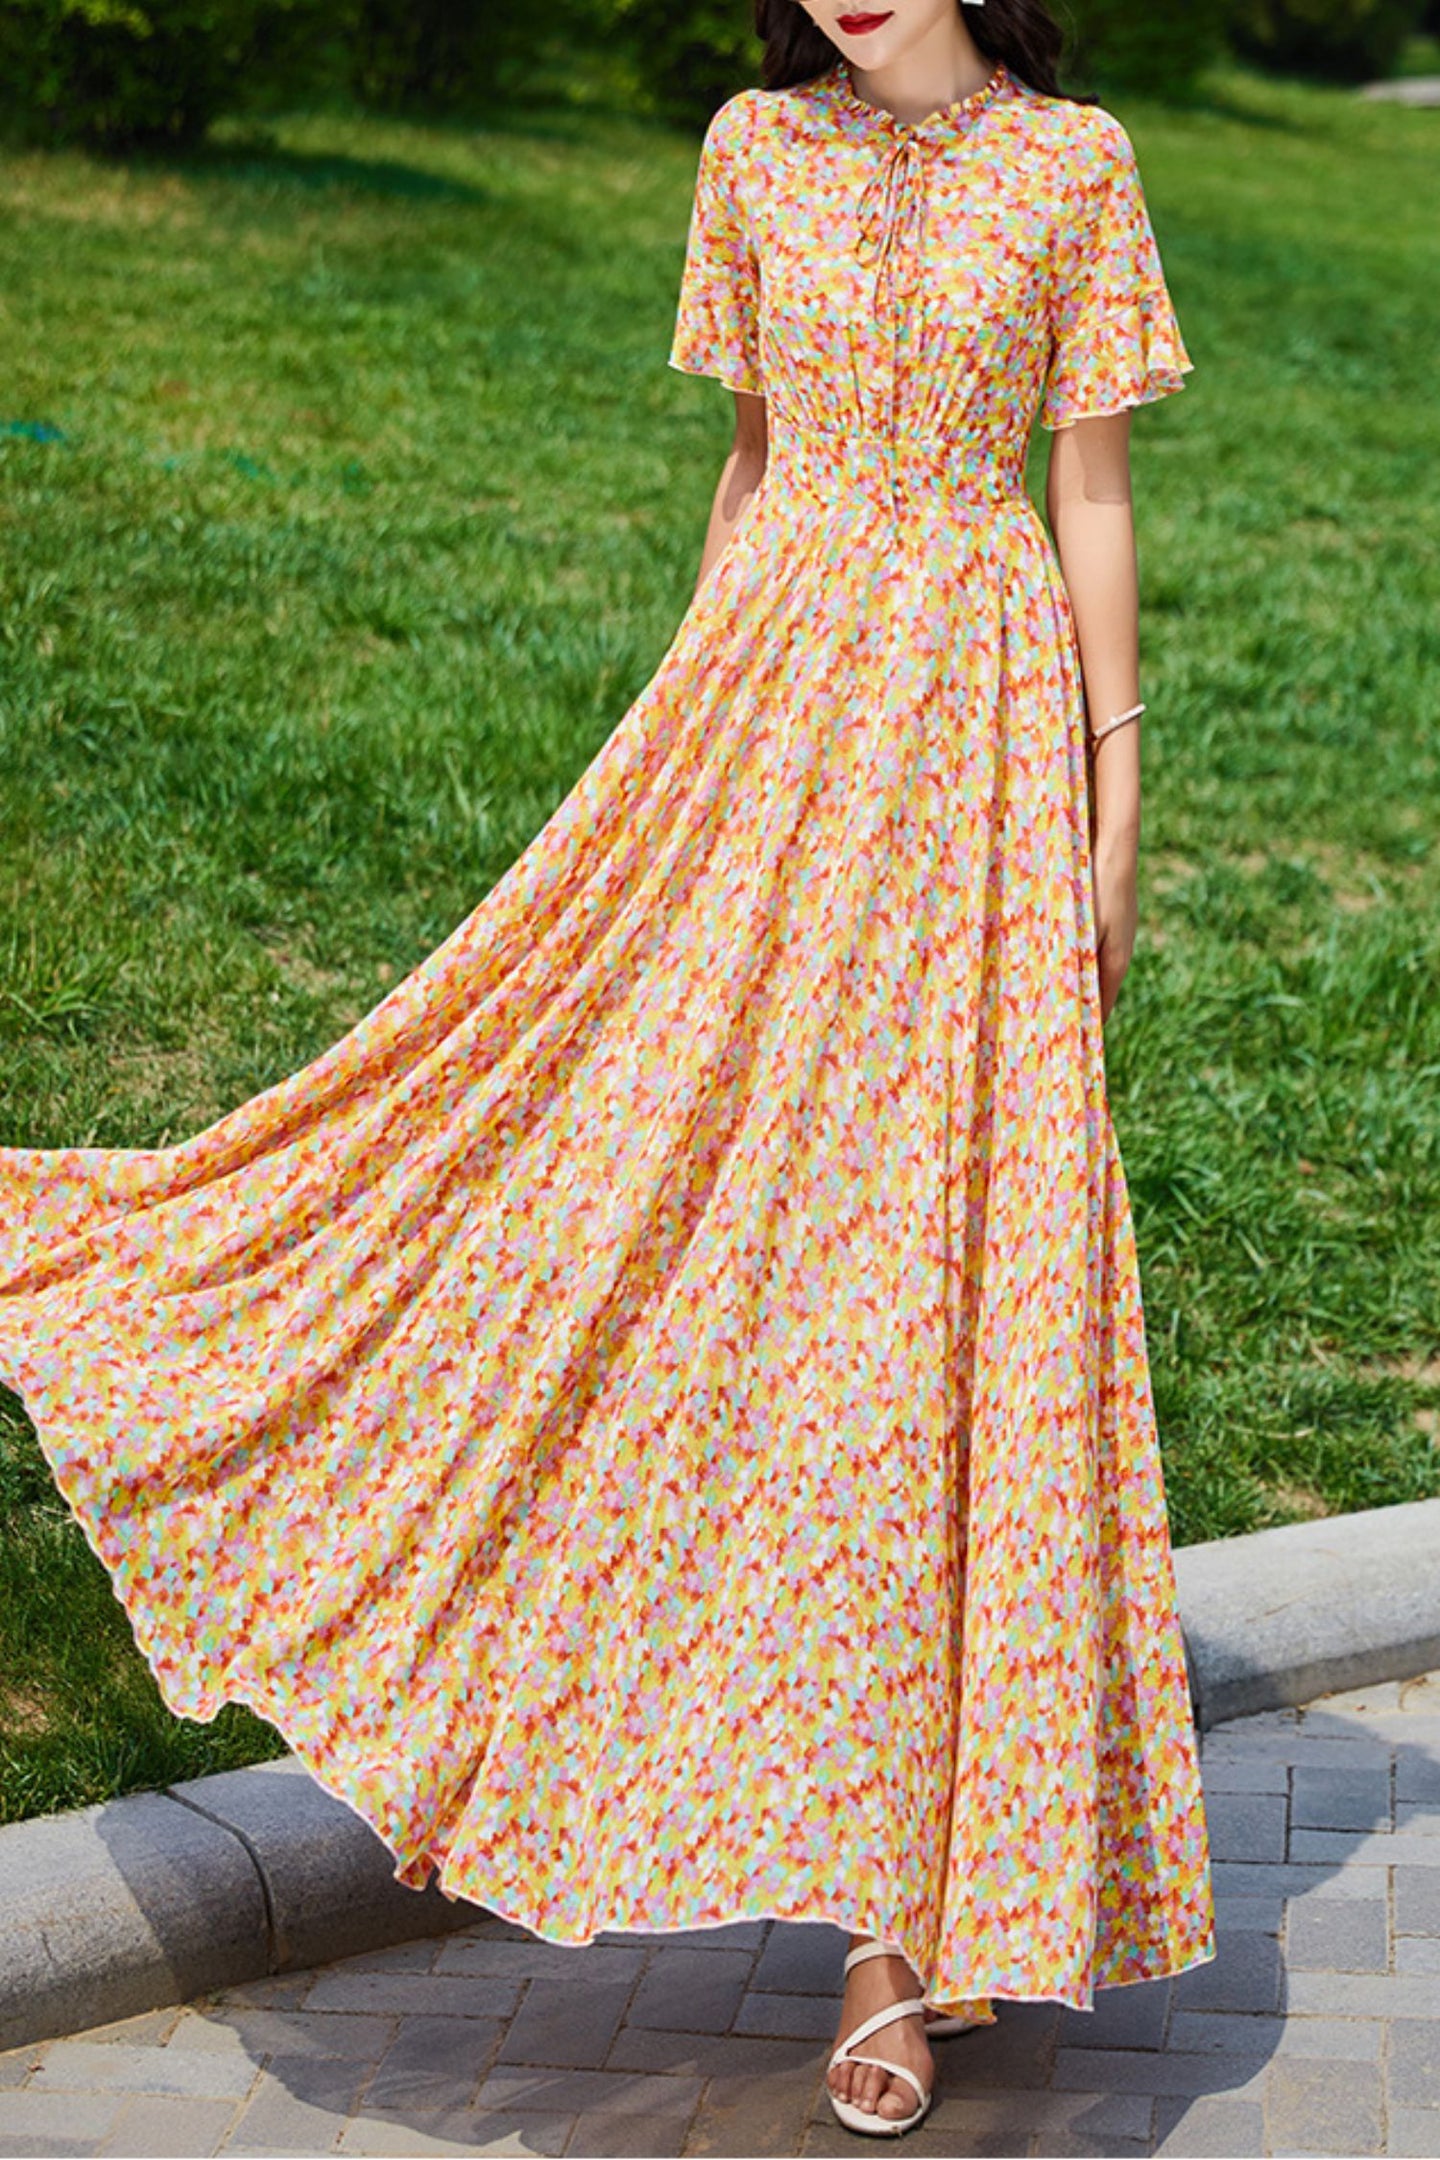 Summer chiffon floral dress women C4113